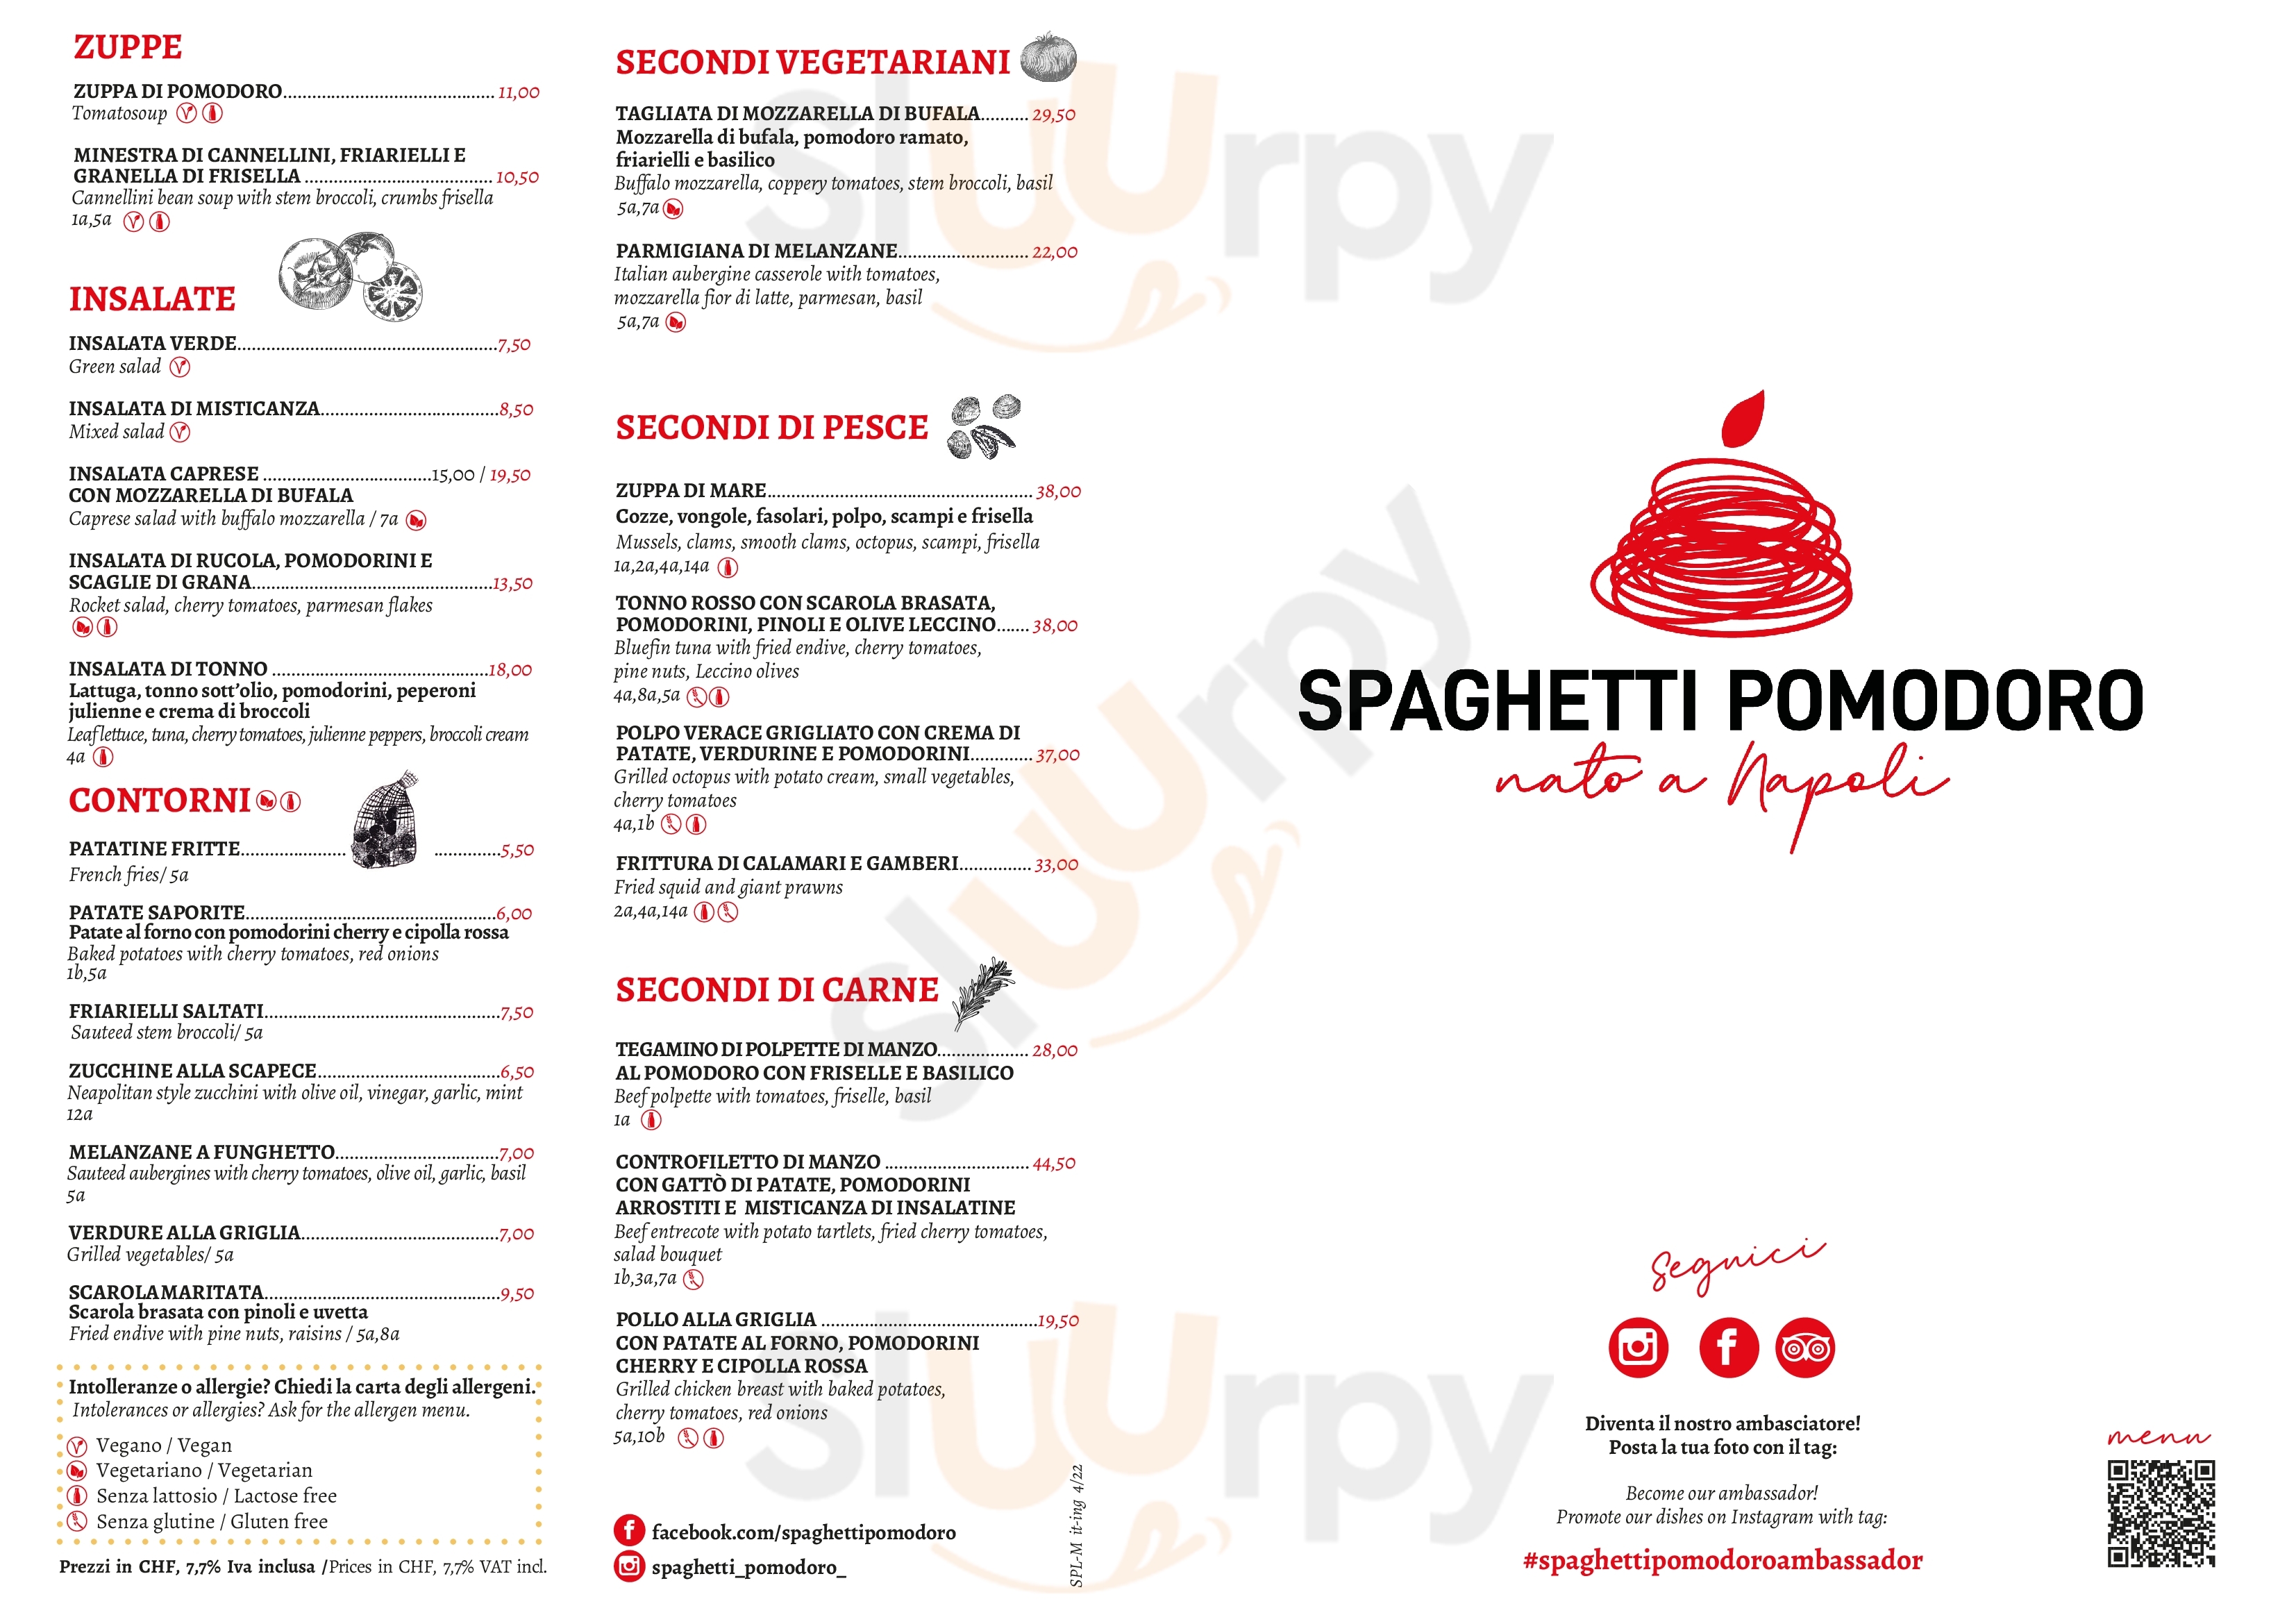 Spaghetti Pomodoro Lugano Lugano Menu - 1